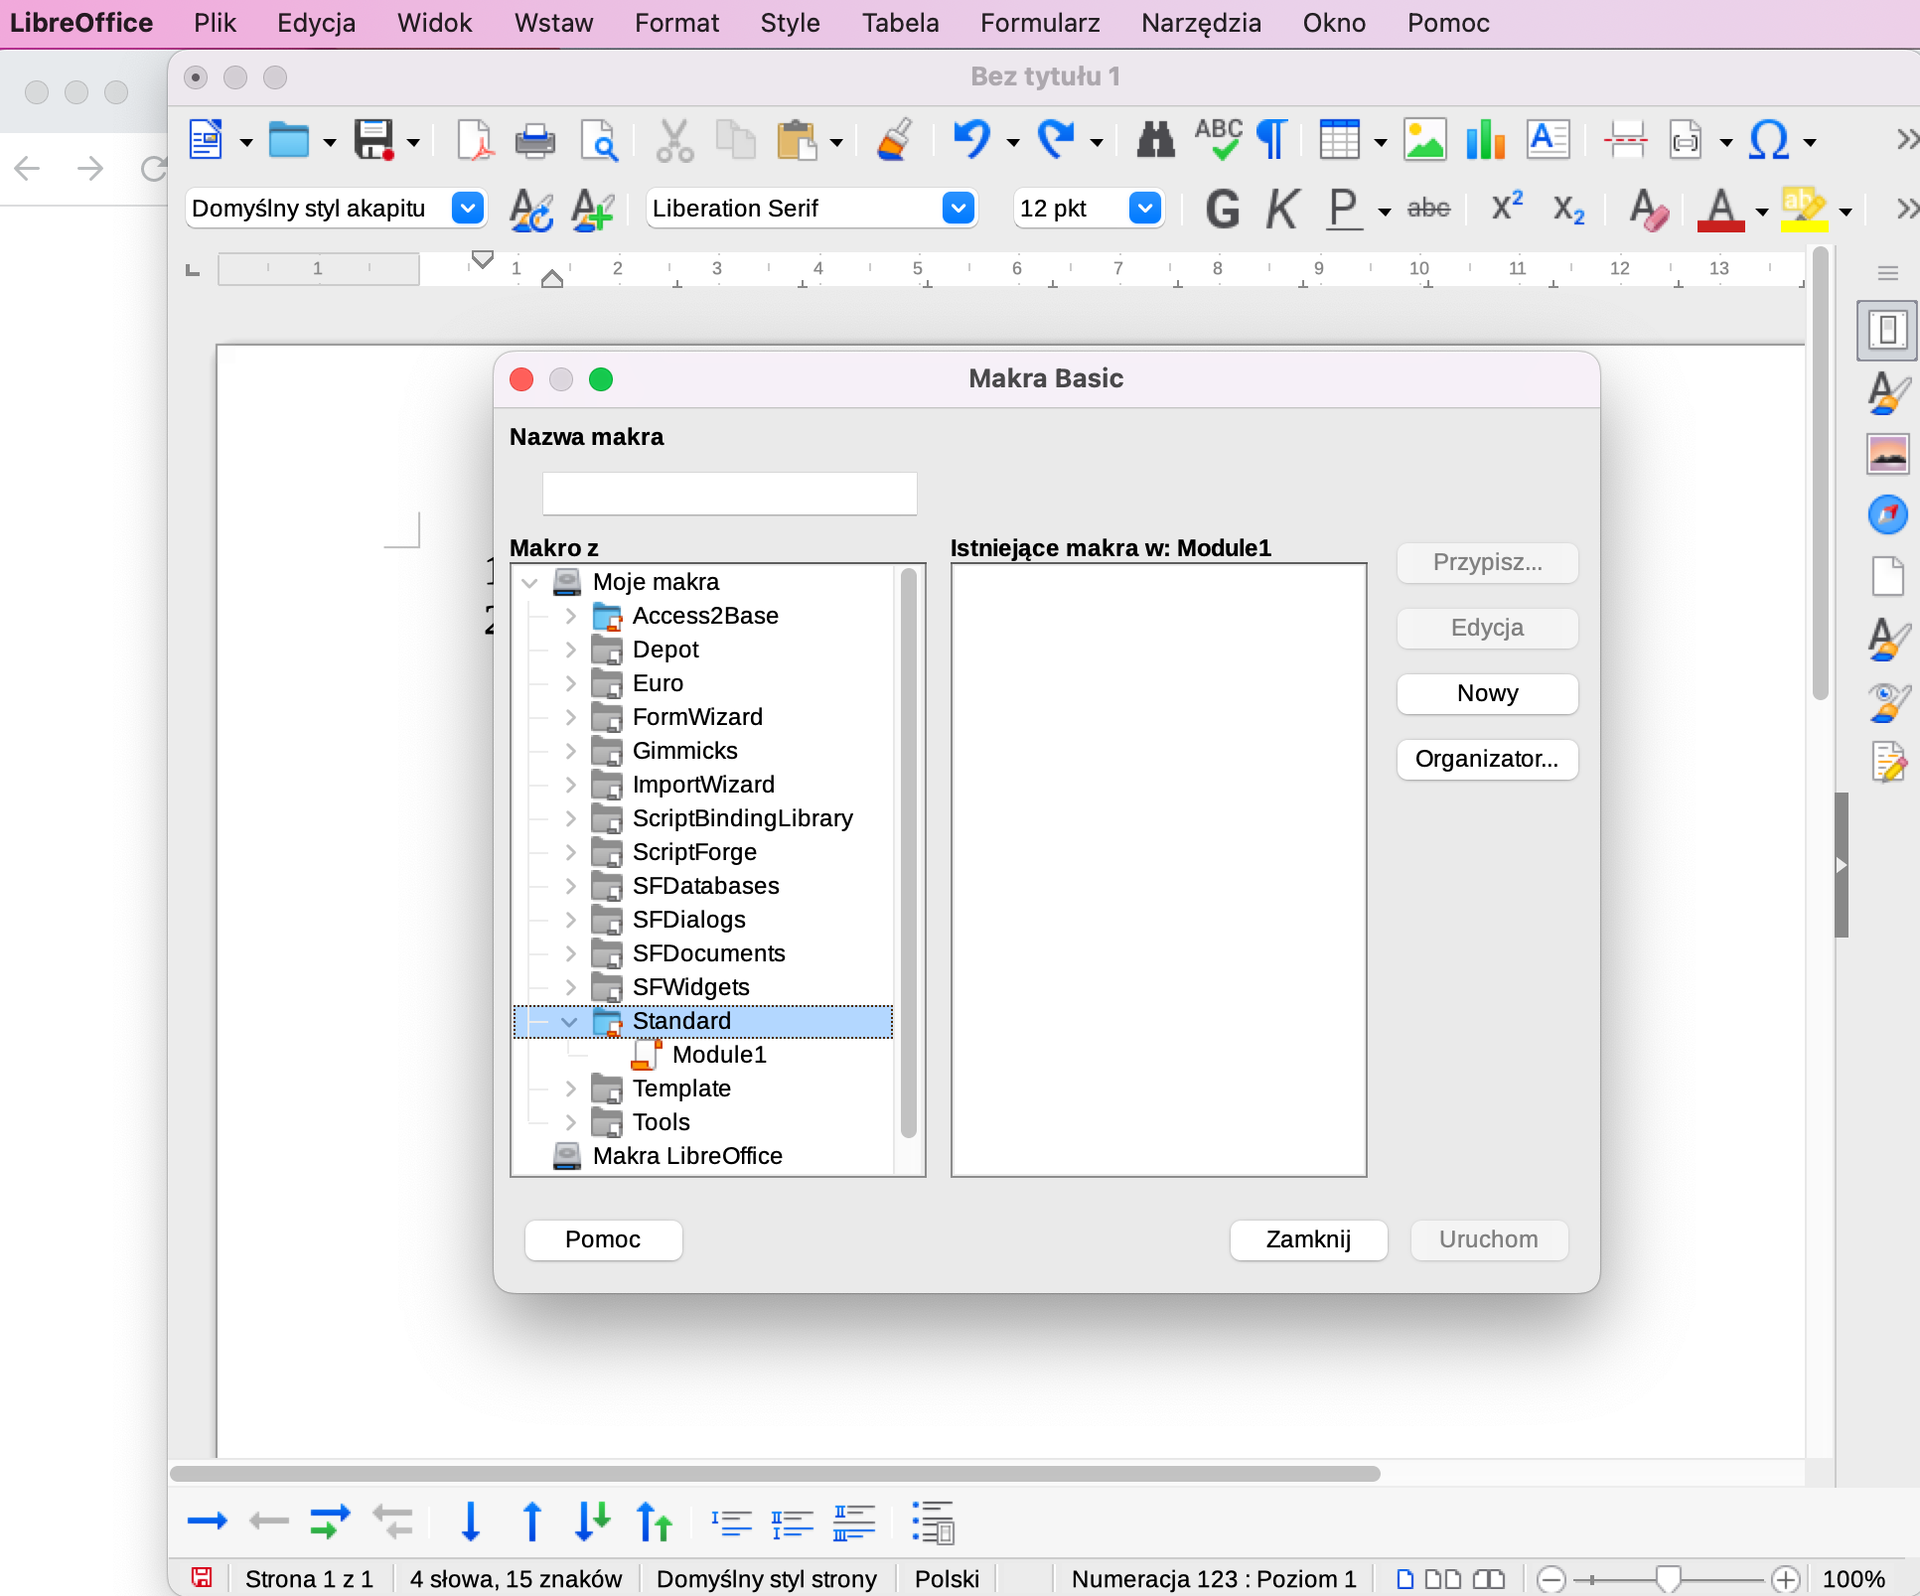 Ilustracja przedstawia fragment dokumentu LibreOffice Writer. W górnym pasku widoczne są ikonki programu, w centralnym punkcie dokumentu widoczne jest okno: Makra basic. Po lewej stronie okna znajduje się podłużna lista: Moje makra. Pod spodem znajdują się opcje. Spośród nich wybrana jest opcja Standard, a pod nią opcja  Module 1 . Duże okno pośrodku zatytułowane: Istniejące makra w: Module1 jest puste, z prawej strony widoczne są przyciski: Przypisz, Edycja, Nowy, Organizator. Na dole okna znajdują się przyciski: Pomoc, Zamknij, Uruchom. 